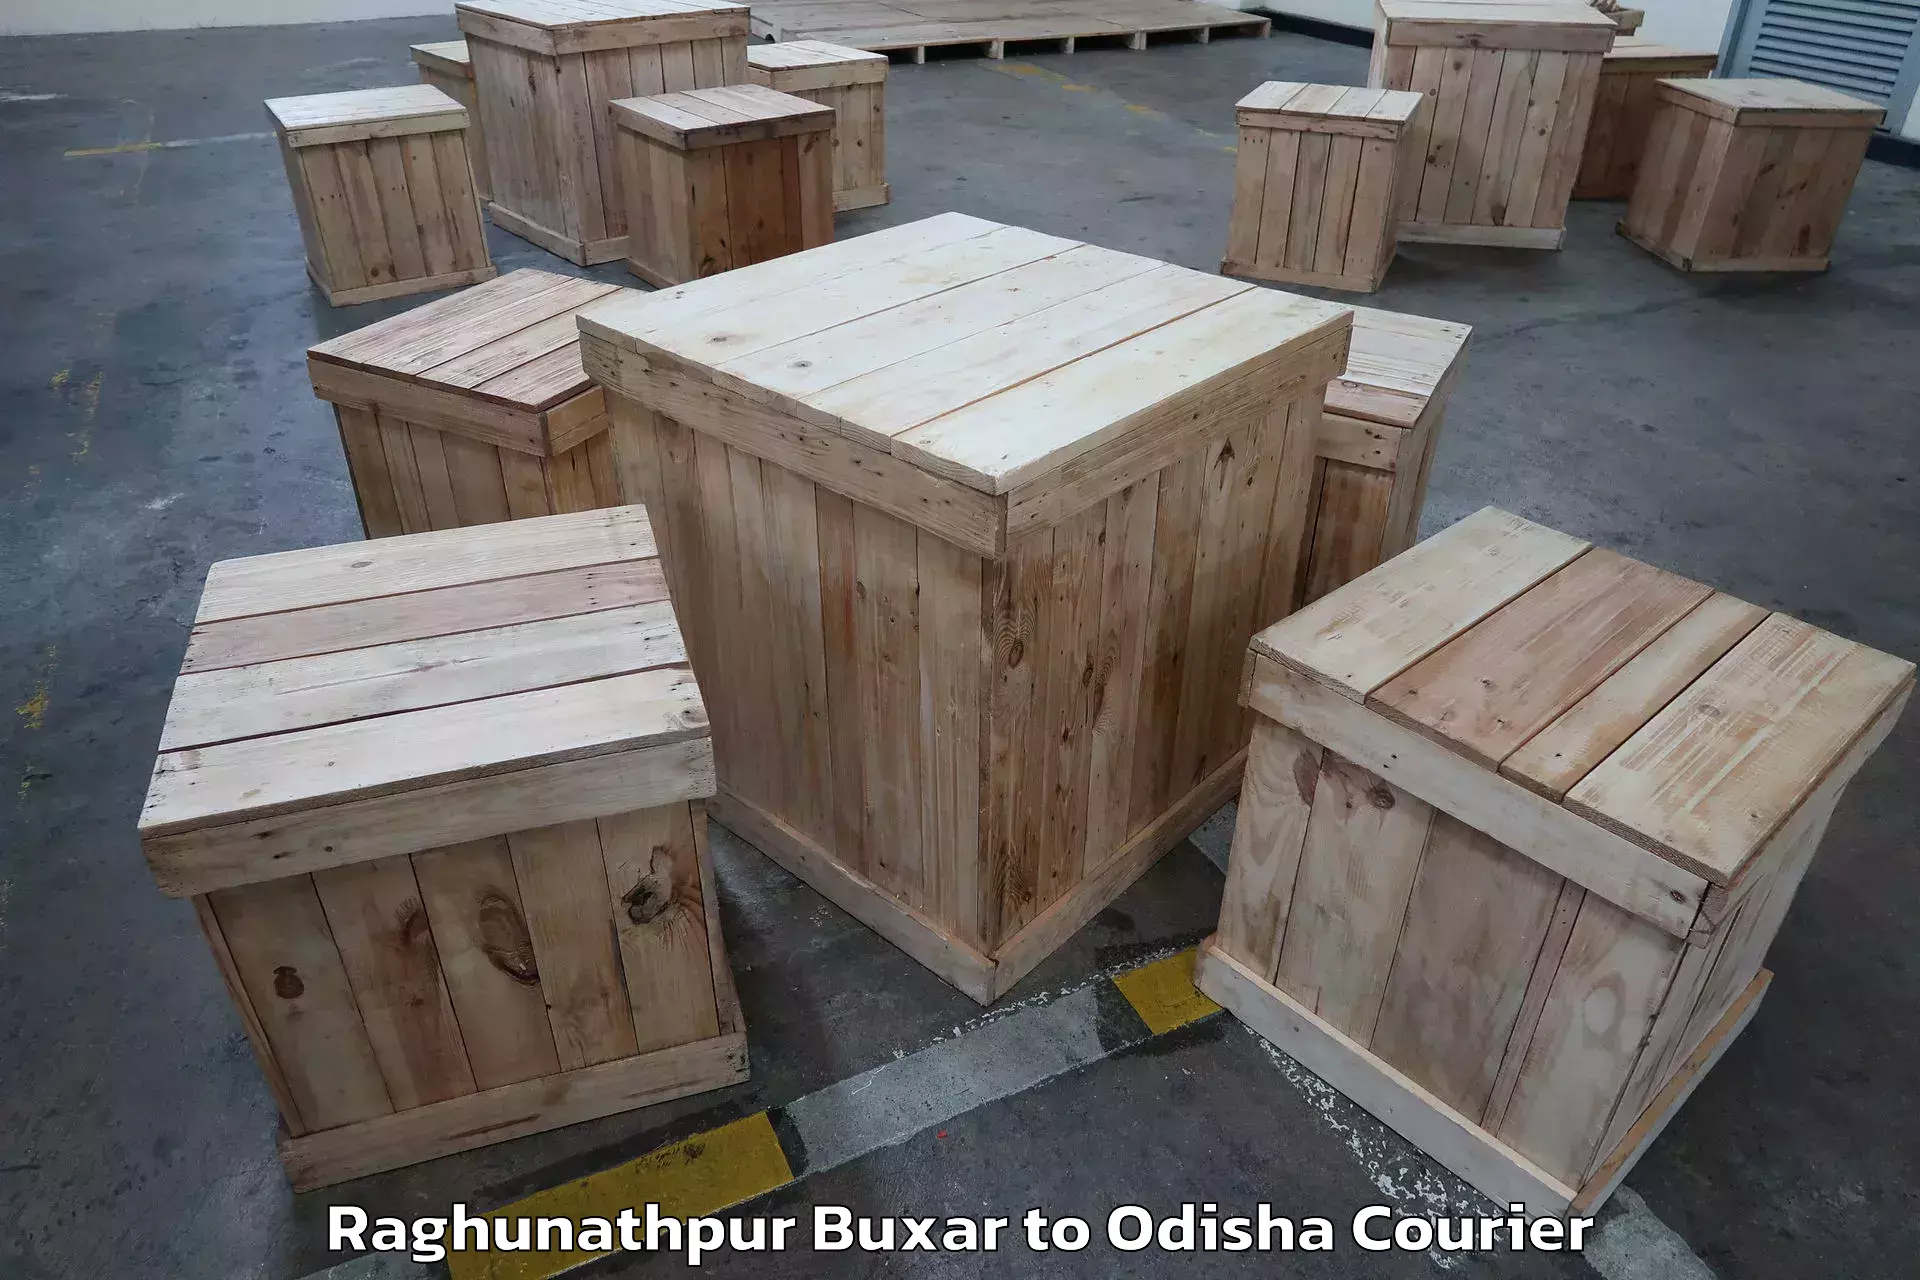 Door-to-door relocation services Raghunathpur Buxar to Tikiri